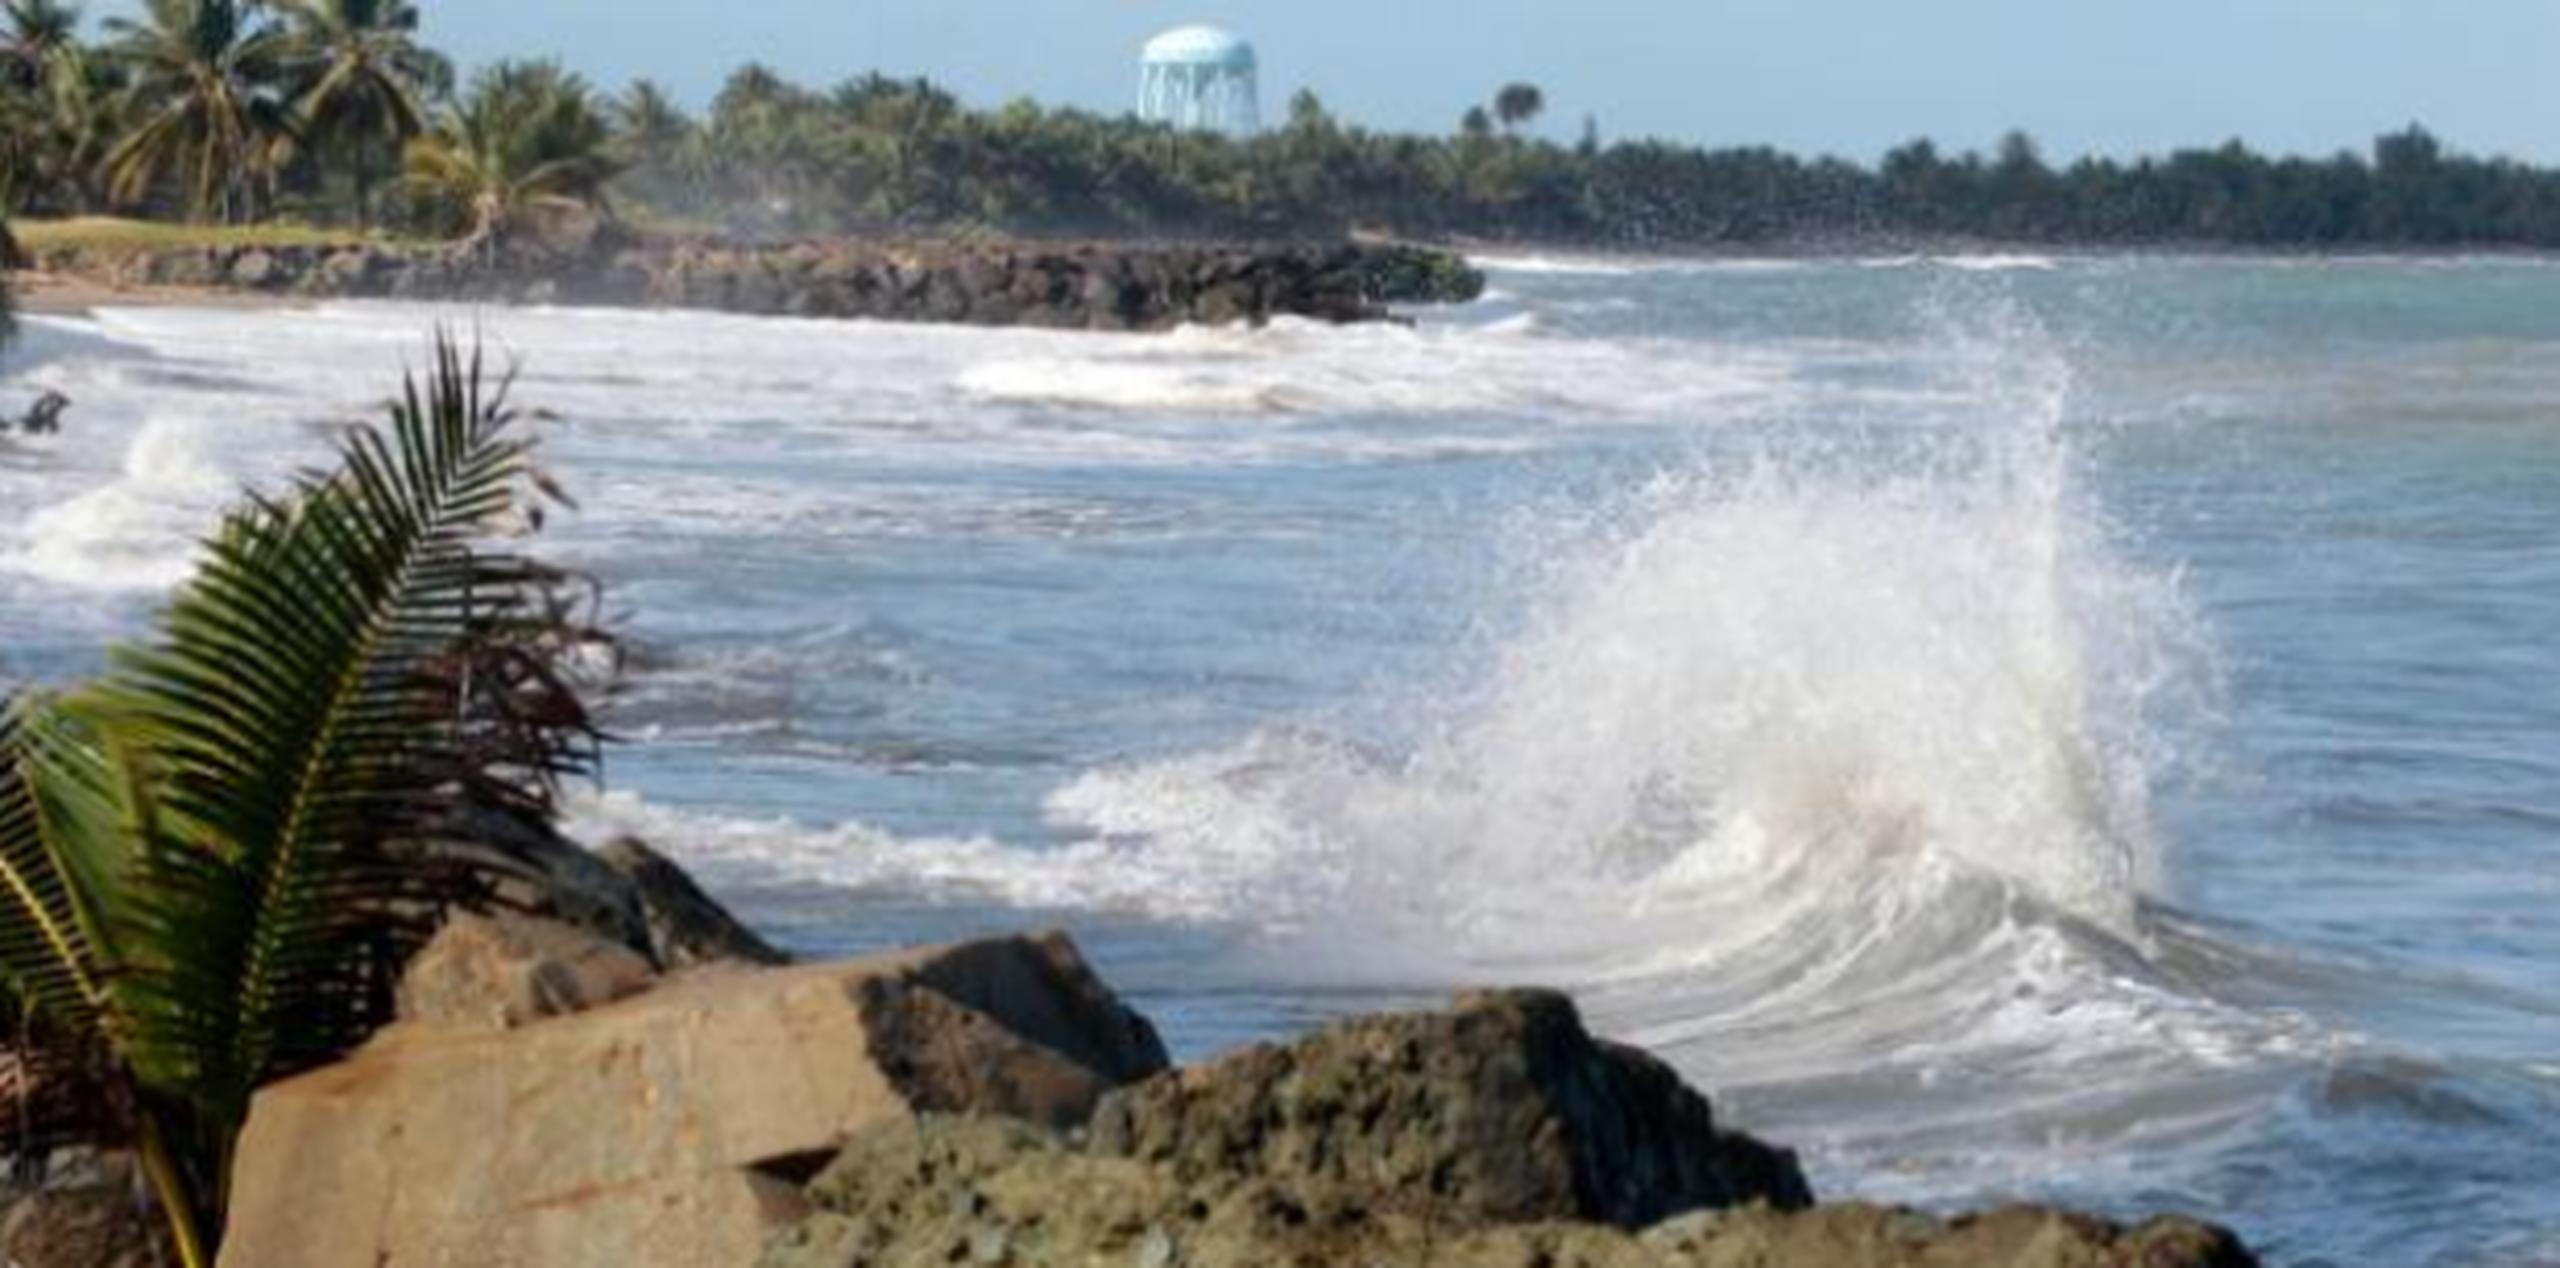 El mar picado es consecuencia de los vientos que se registran entre 20 y 25 millas por horas. Además, habrá aguaceros esporádicos. (Archivo)